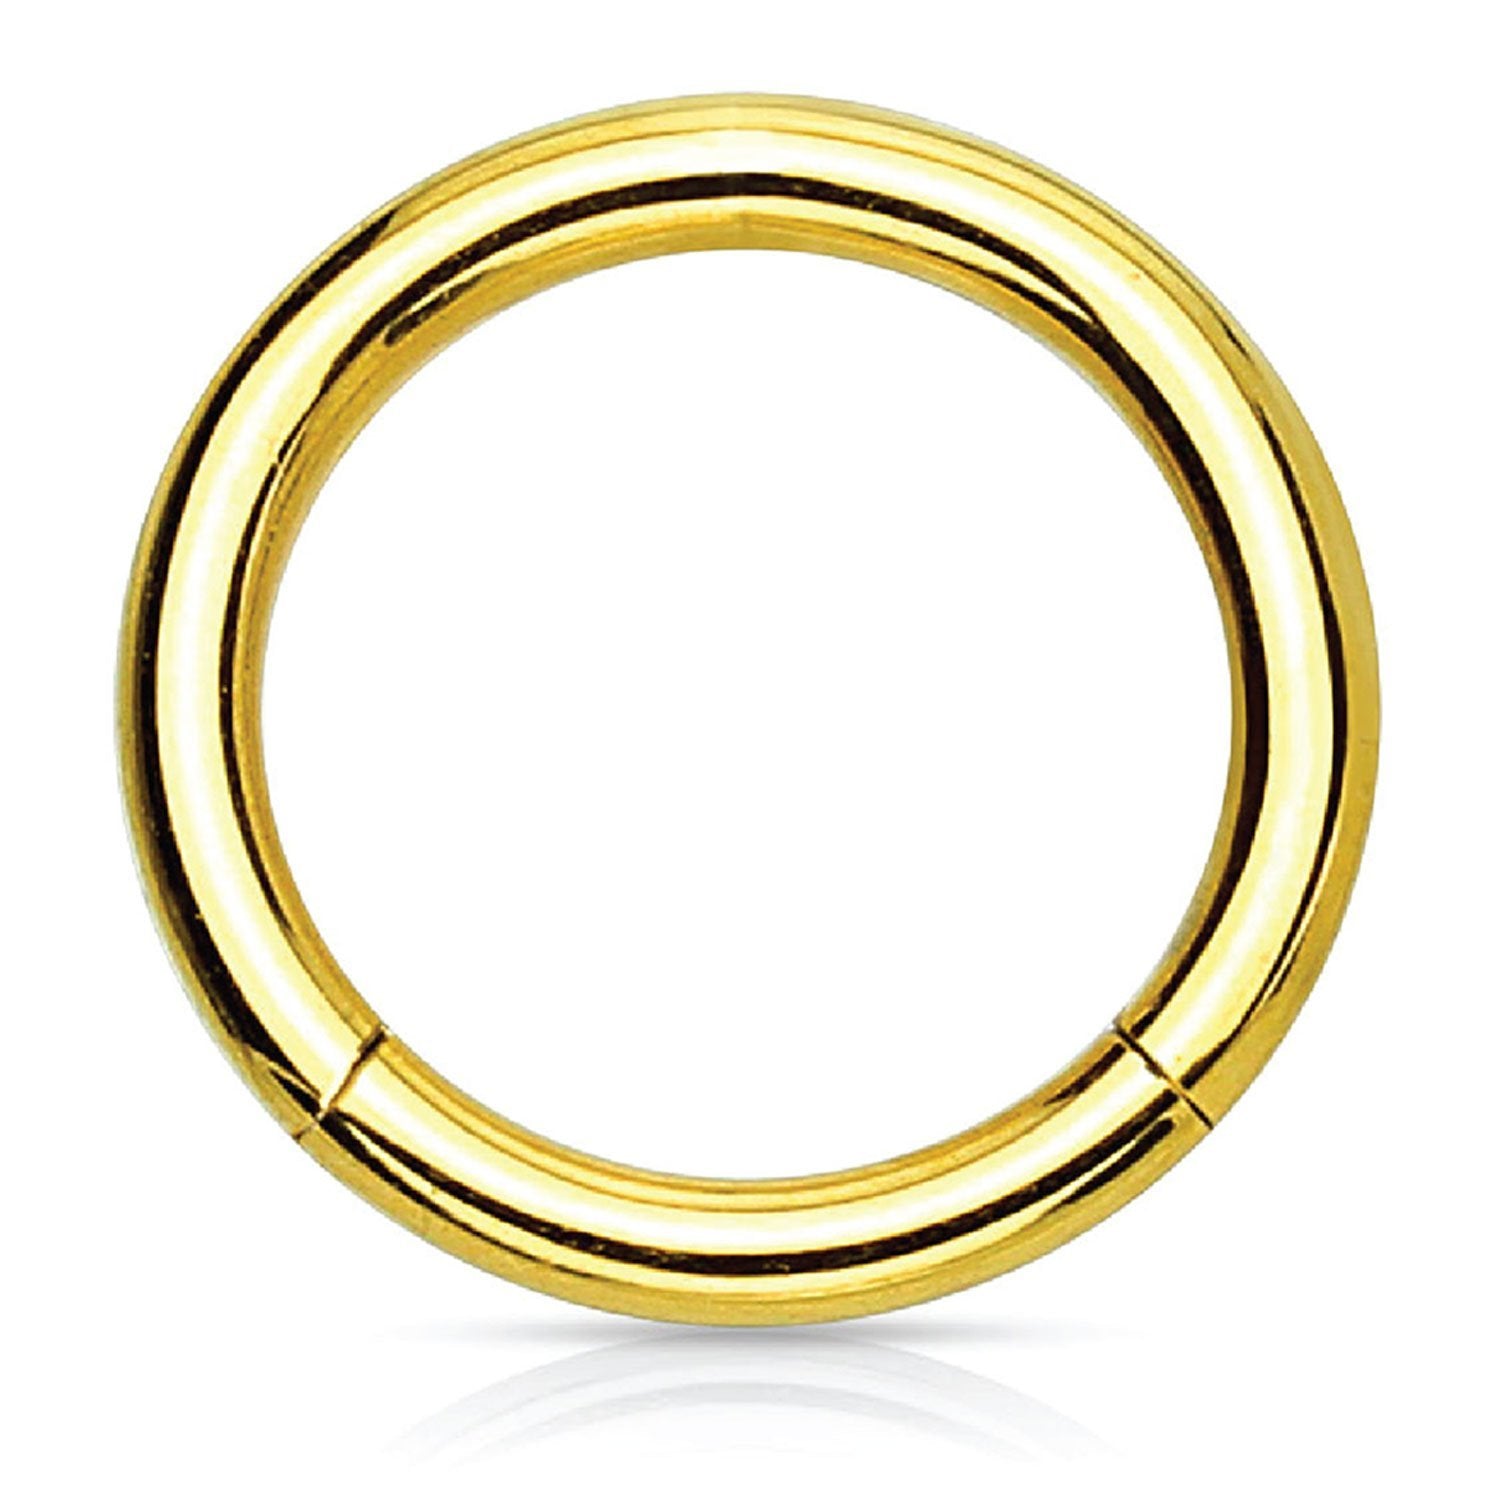 Piercing Ring Hinged Clicker Segment Hoop 4g 20g Goldtone Steel Nose